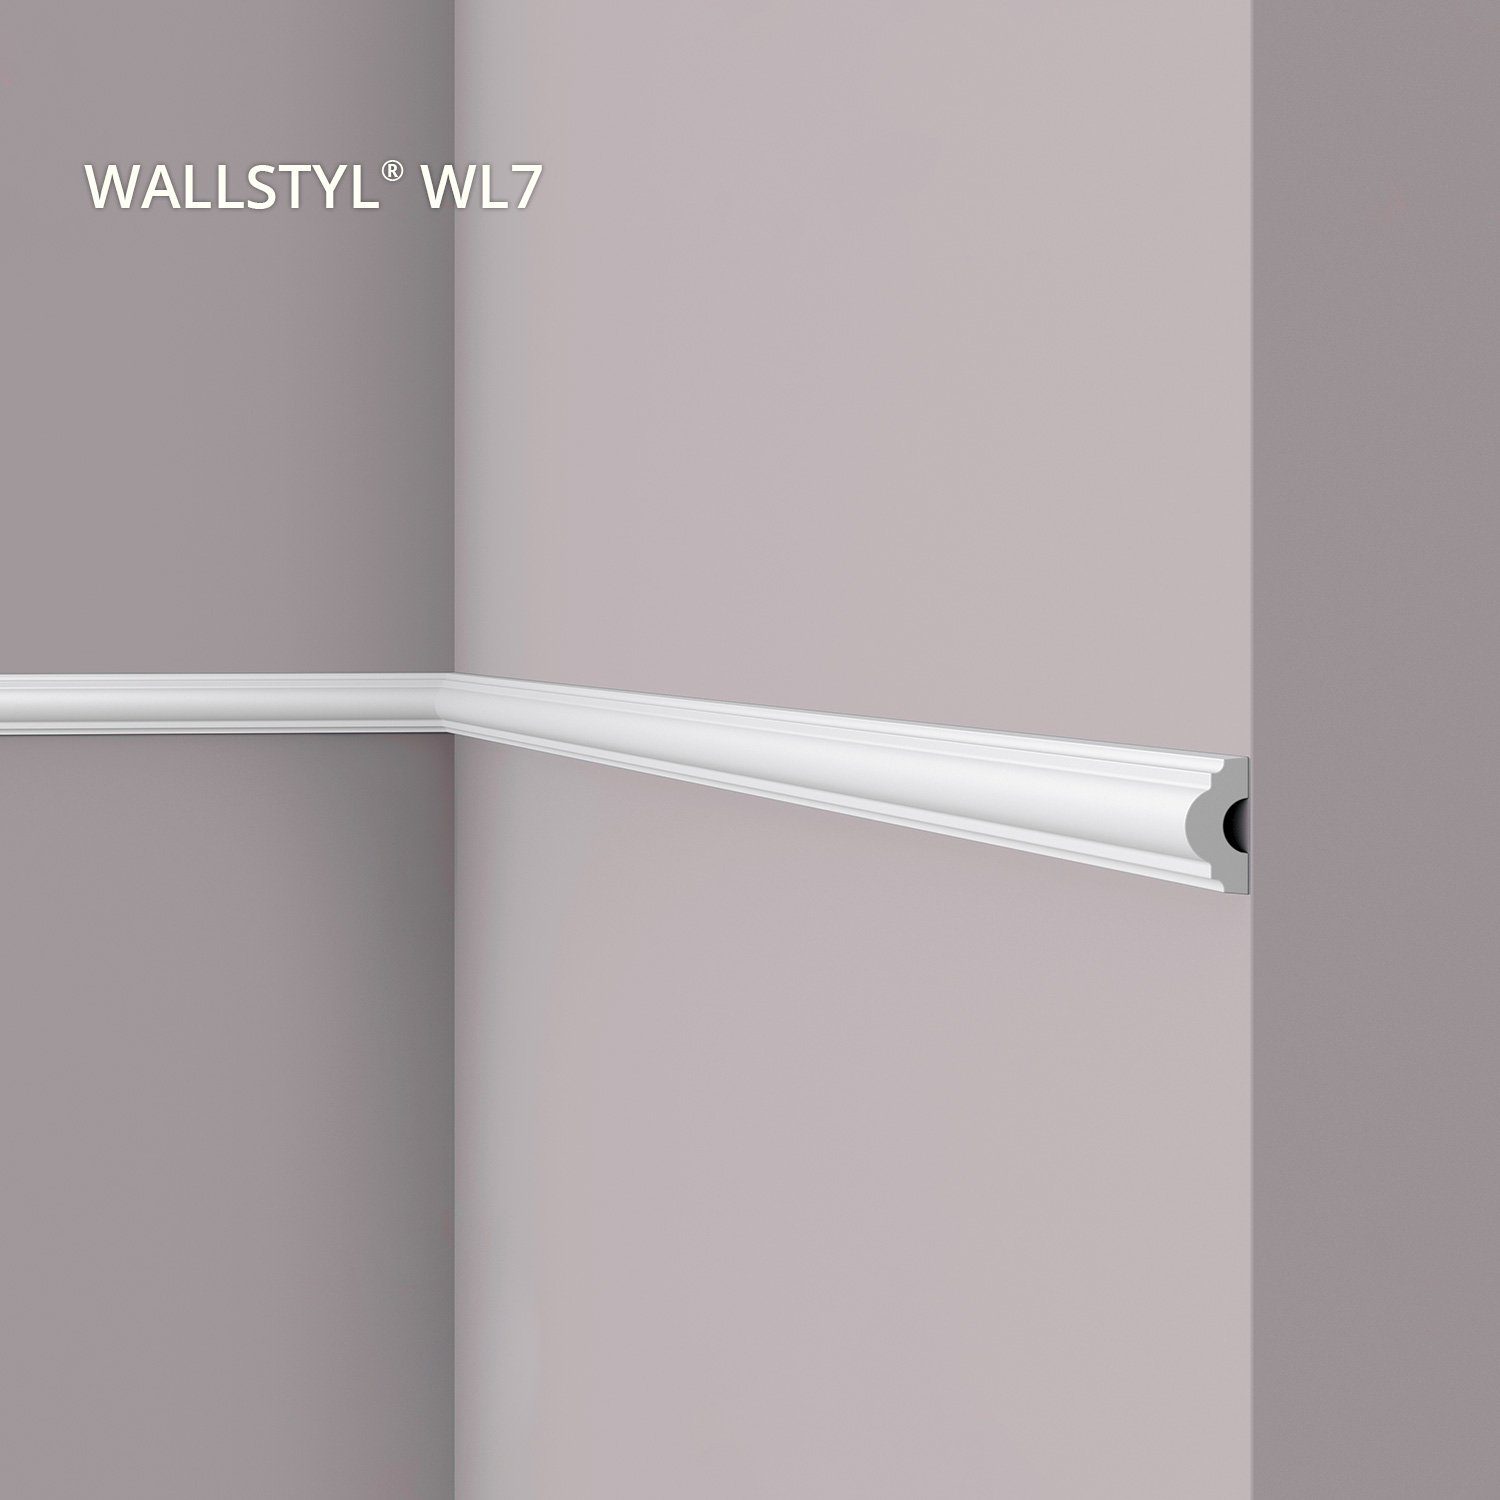 NOËL & MARQUET by nmc Zierleiste WL7, kleben, Extrudiertes Polystyrol (HDPS), Wand- und Friesleiste, 1-St., Zierleiste Stuckleiste Modernes Design, weiß, vorgrundiert